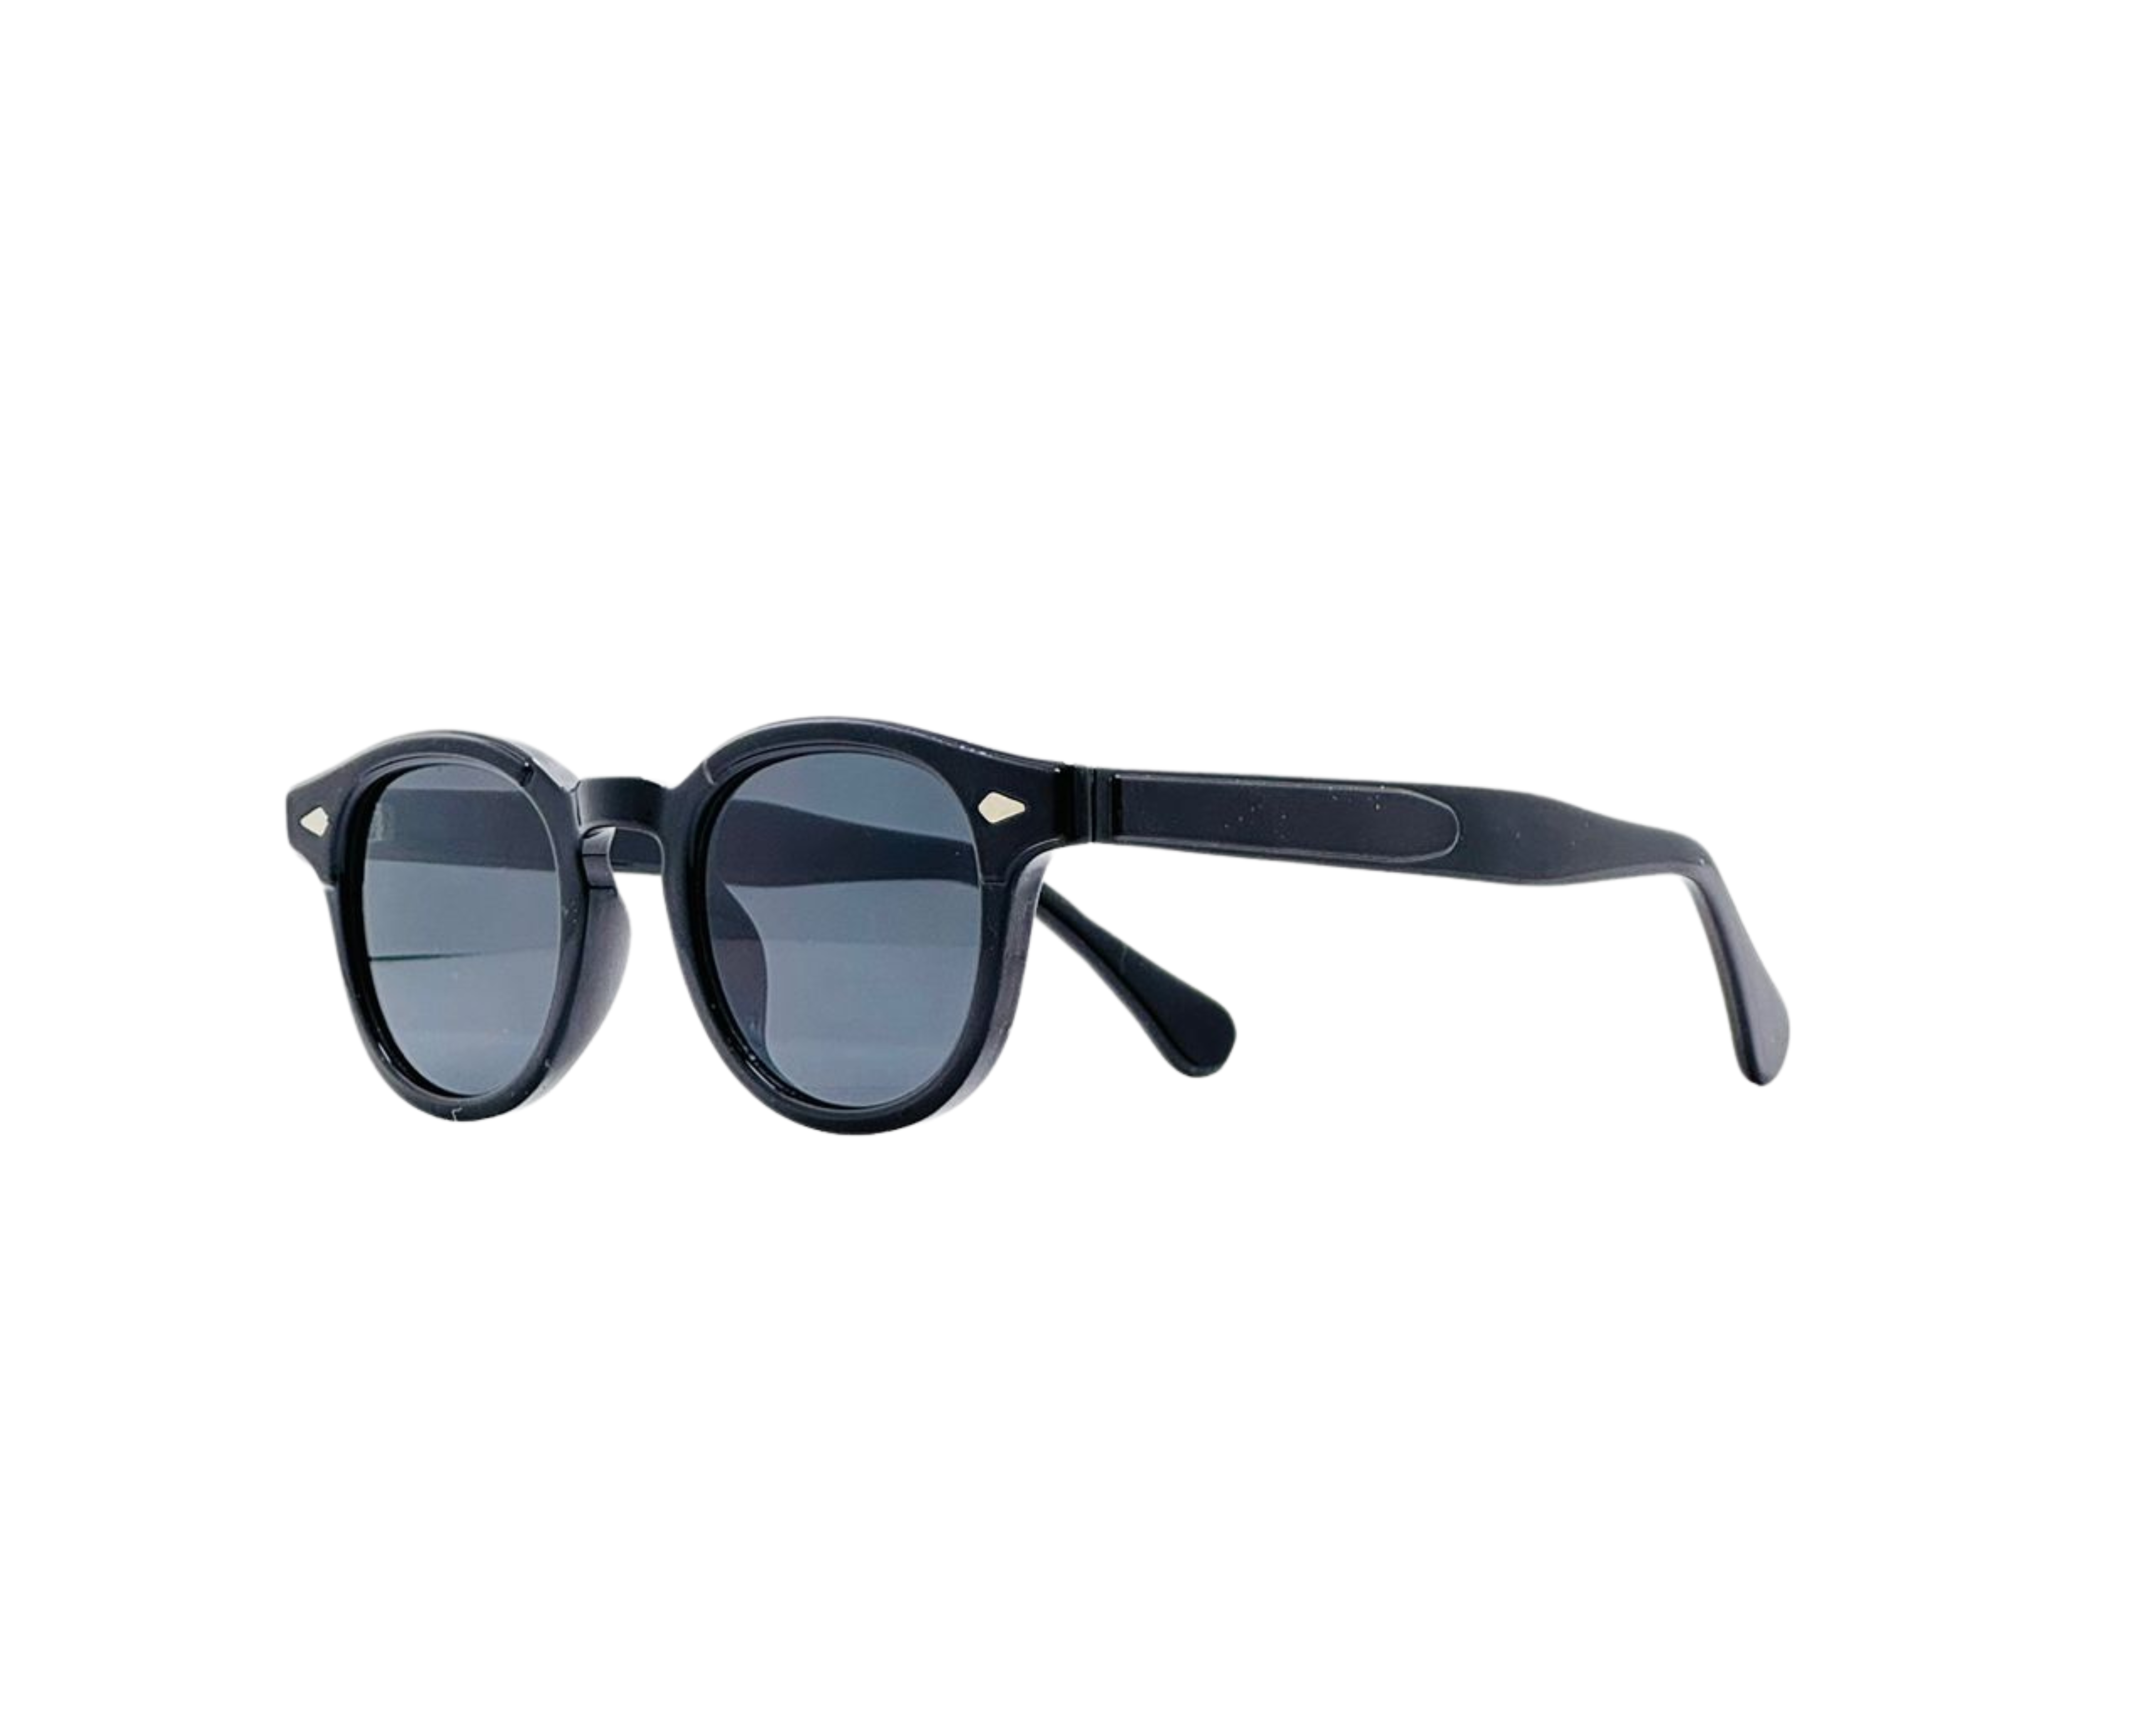 NS Luxury - 6231 - Black - Sunglasses